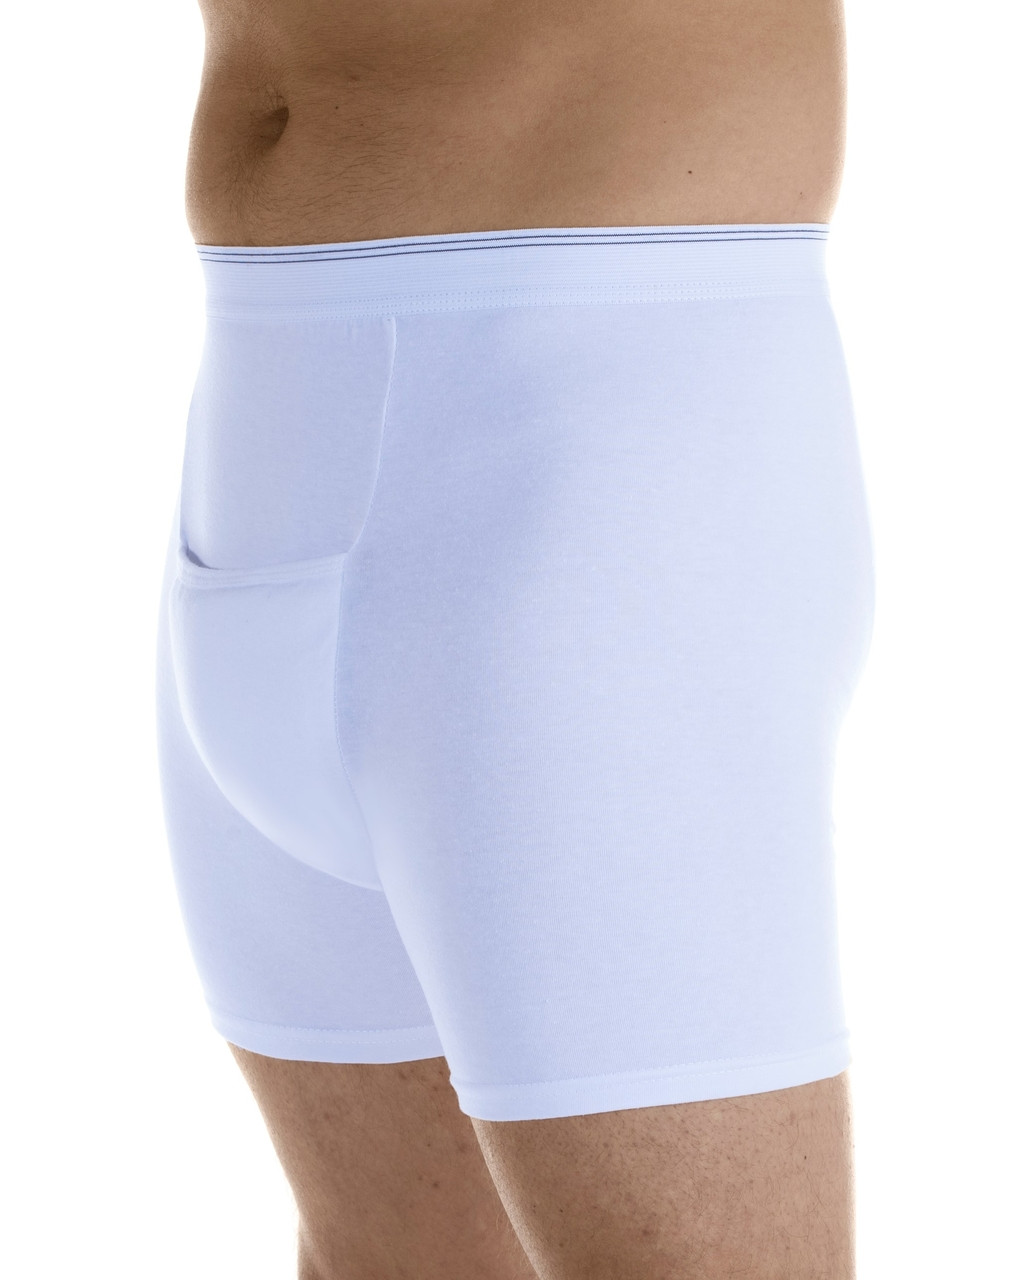 Fashion 3-Pack Men's Incontinence Underwear Cotton Regular